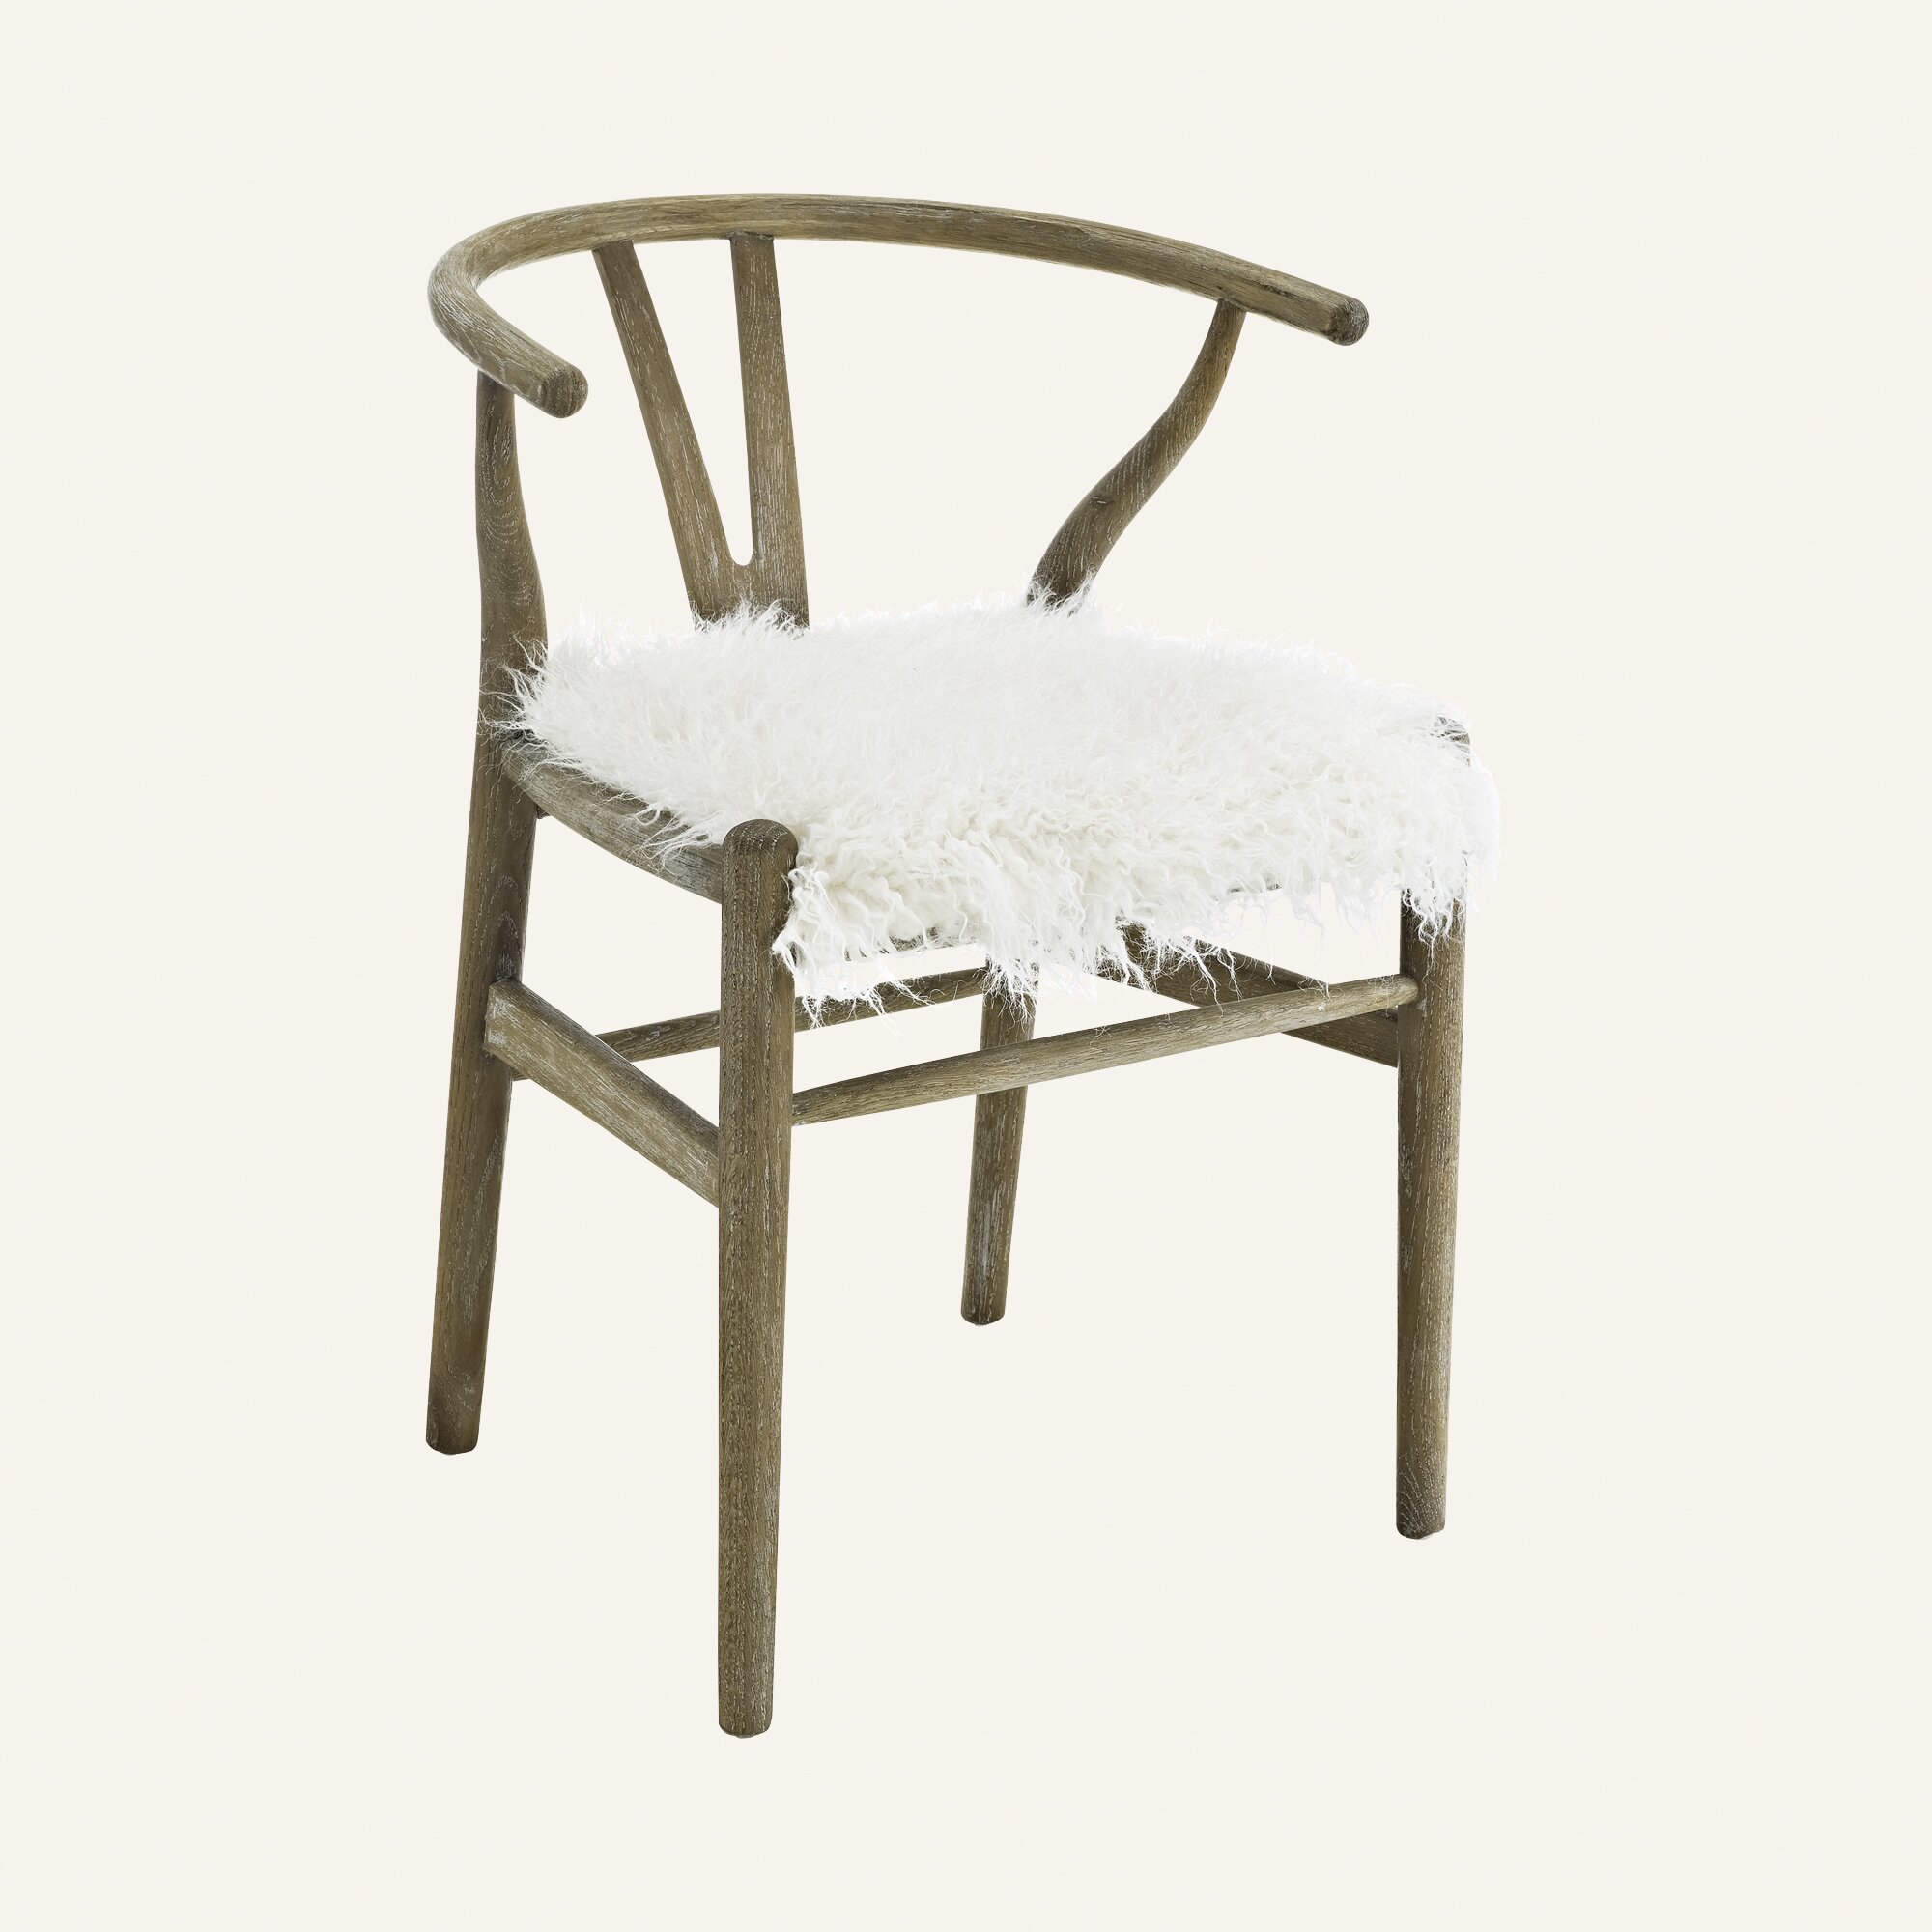 220201 Scandinavian Wood Chair STEAL